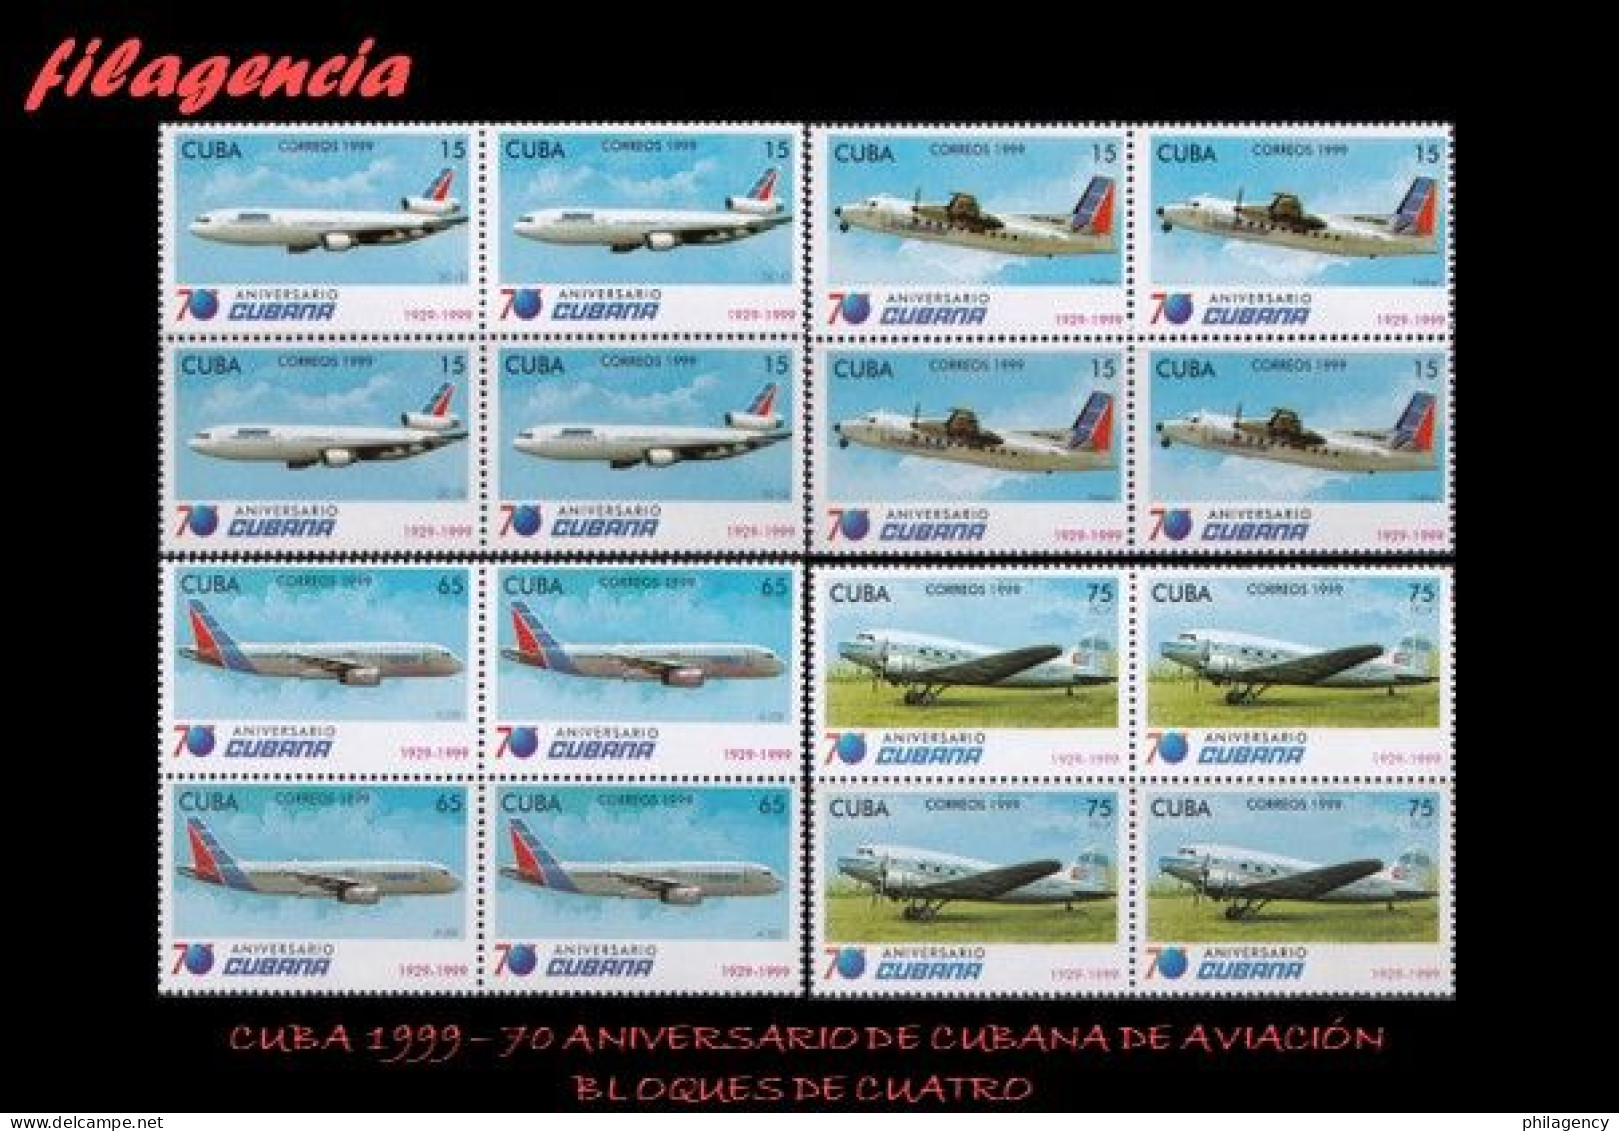 CUBA. BLOQUES DE CUATRO. 1999-23 70 ANIVERSARIO DE CUBANA DE AVIACIÓN - Nuevos